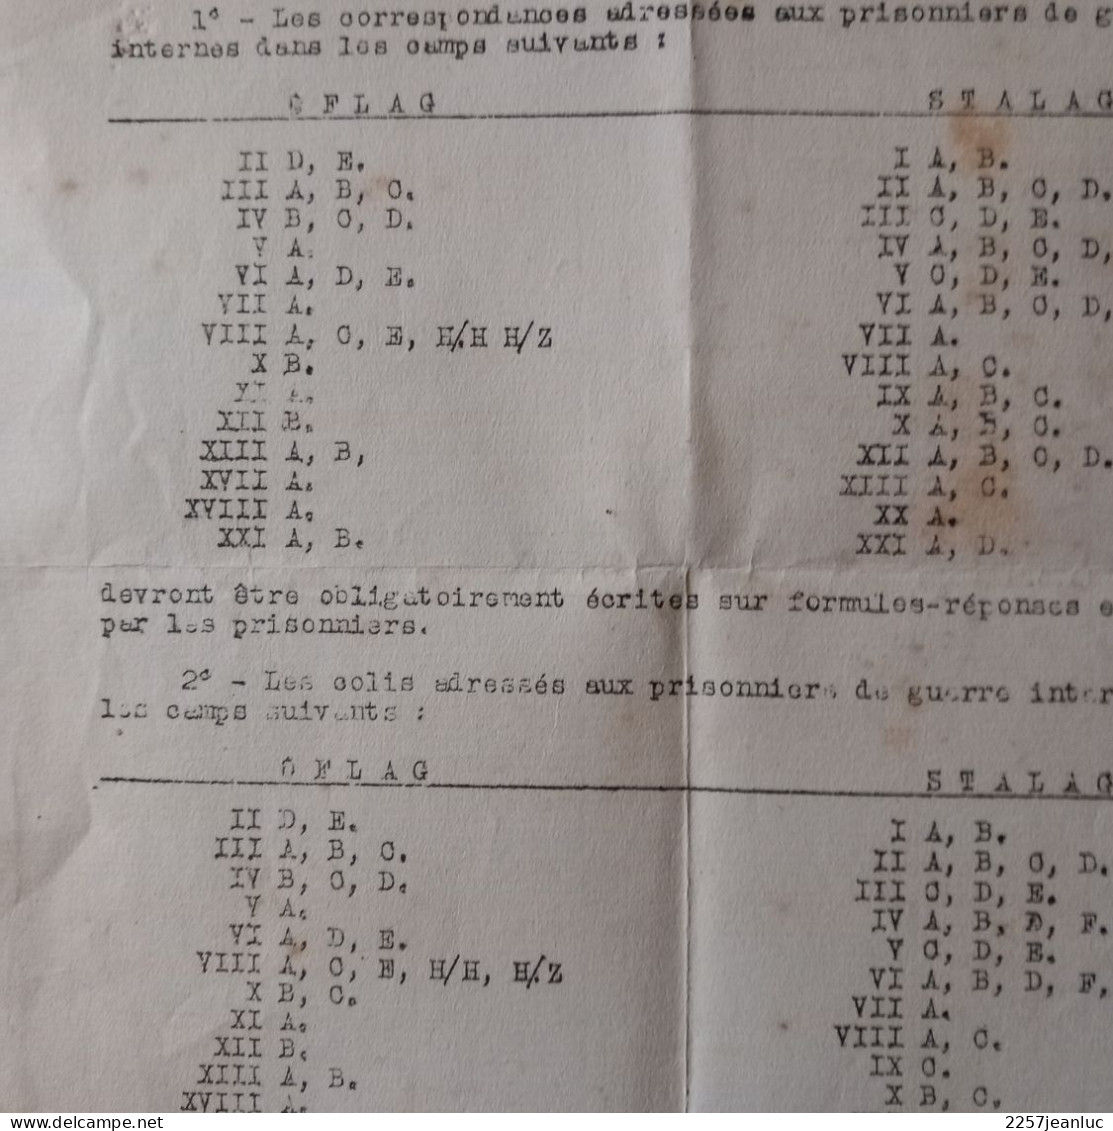 Doc N: 41 Correspondance Avec Les  Prisonniers De Guerre à Sfalag .Oflag  Et Envois De Colis Du 4 Avril 1941 - Decrees & Laws